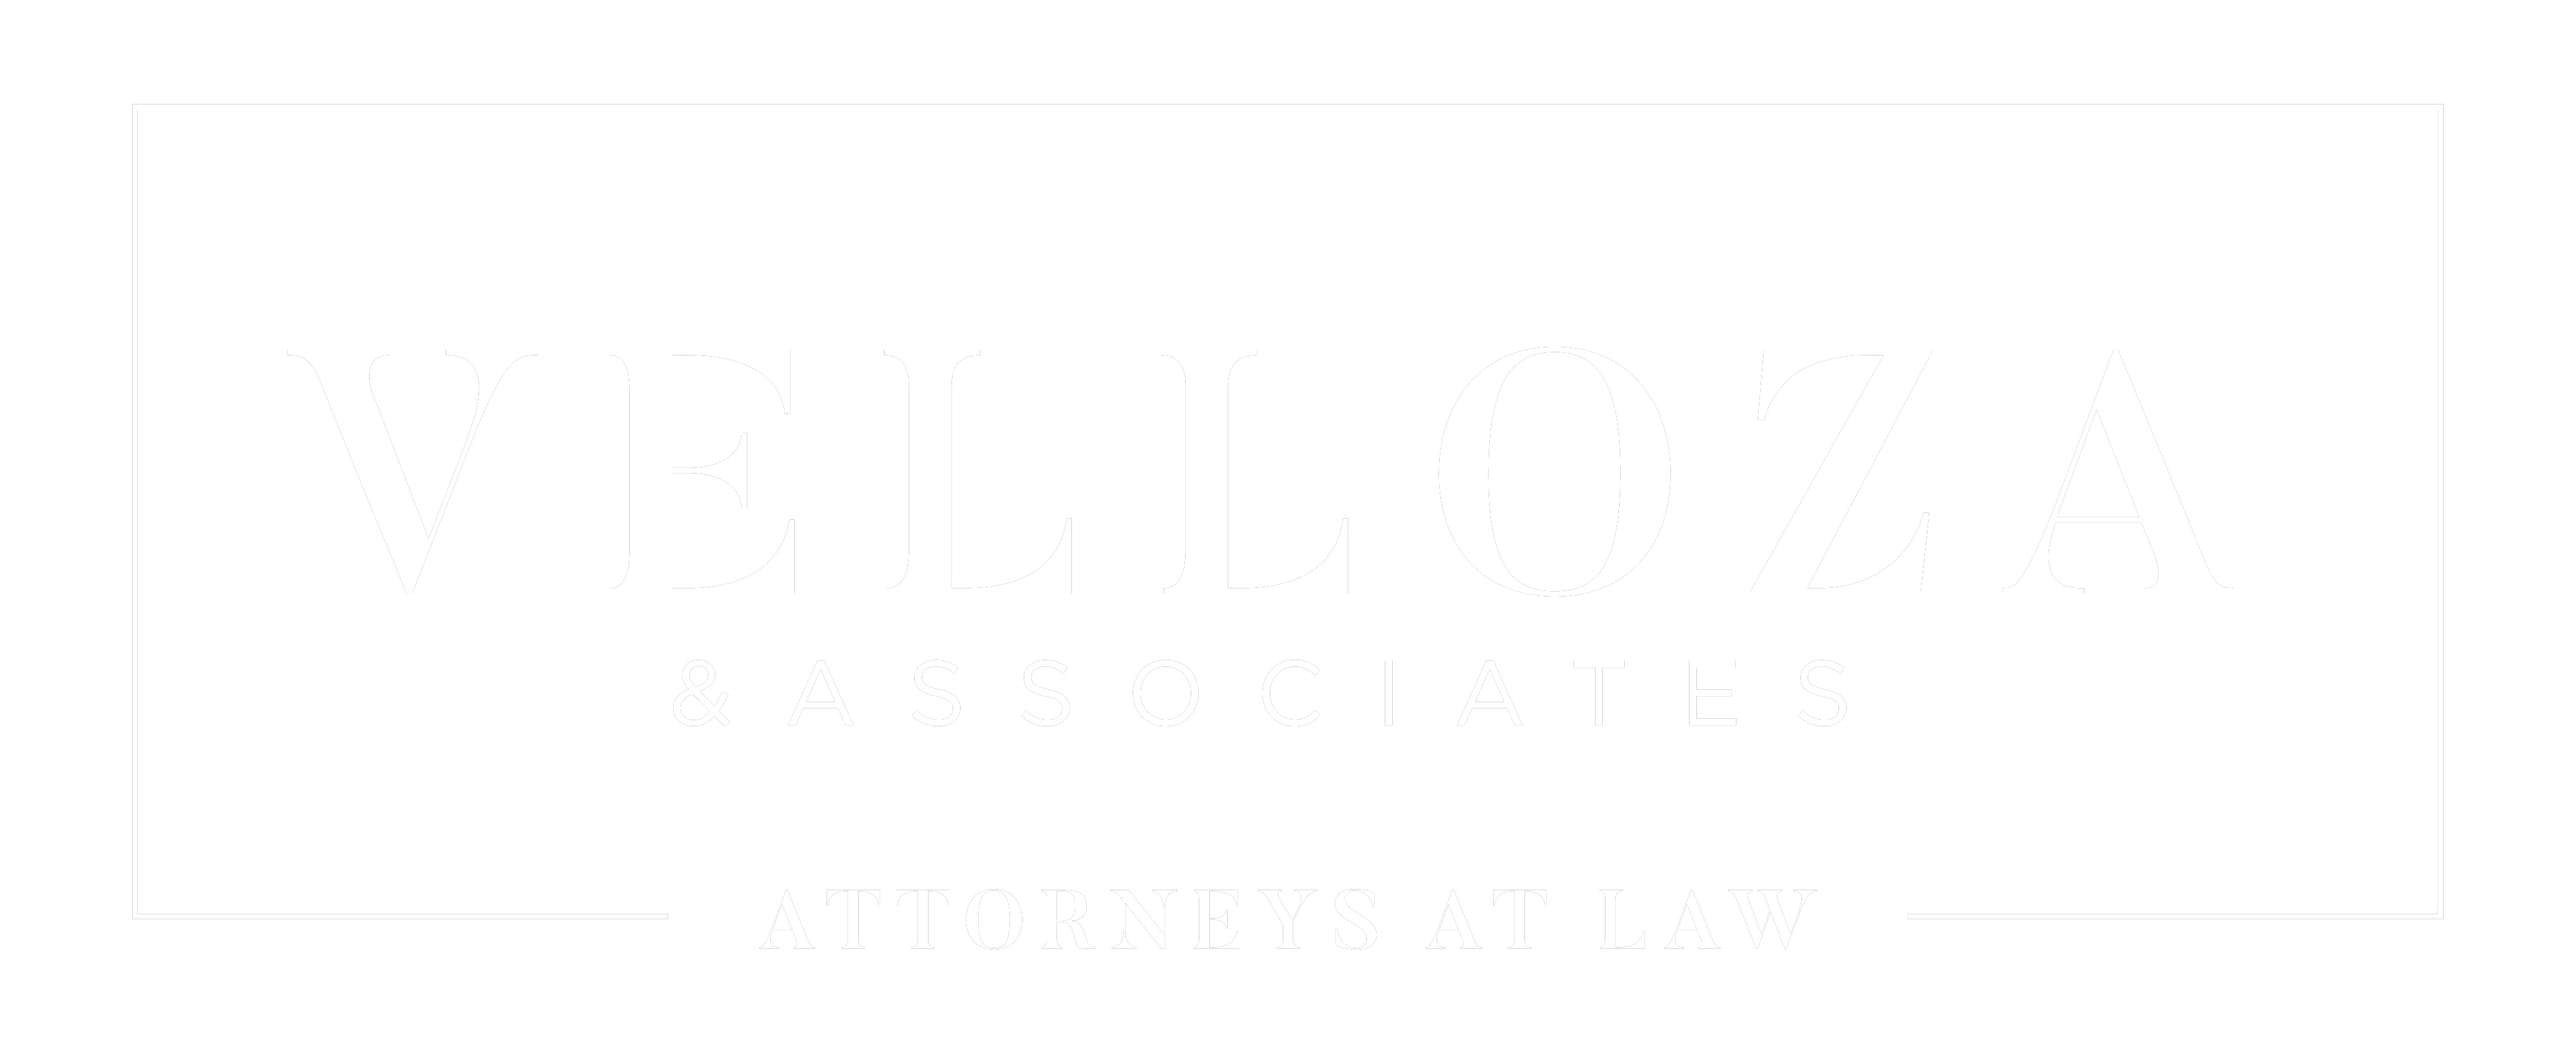 Velloza & Associates, LLC